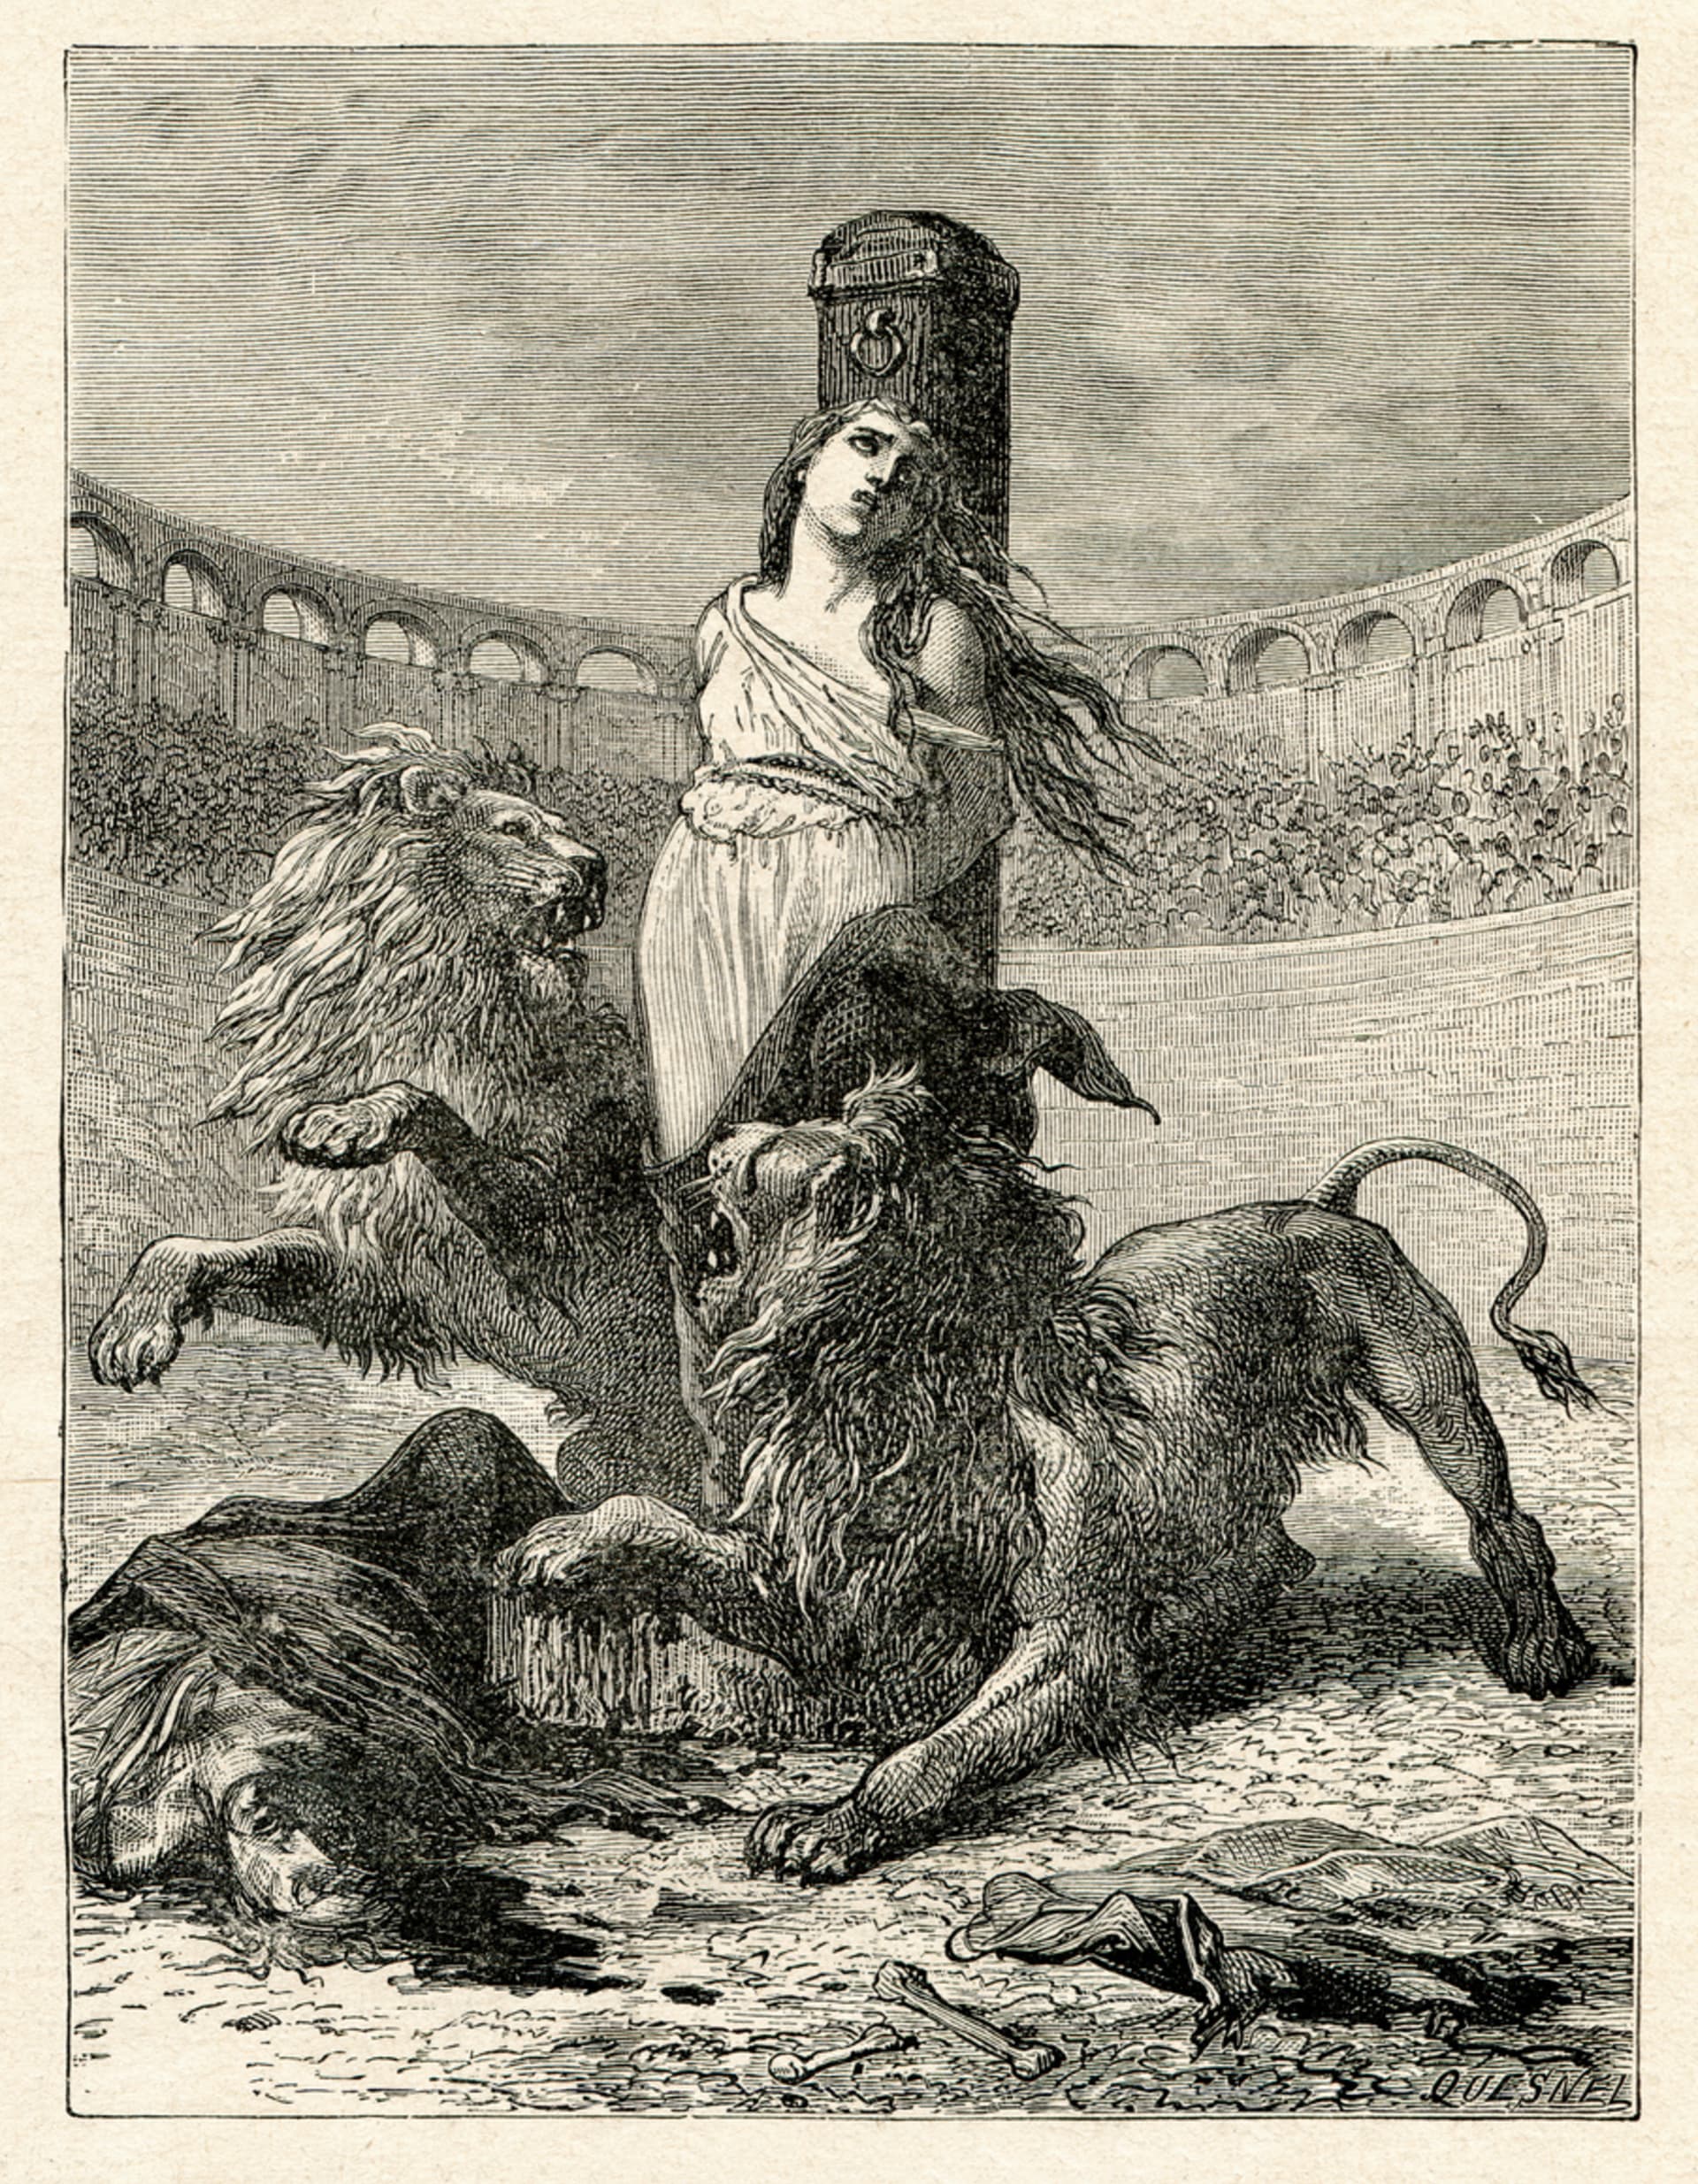 Sežrání lvy zaživa v římském Kolosseu